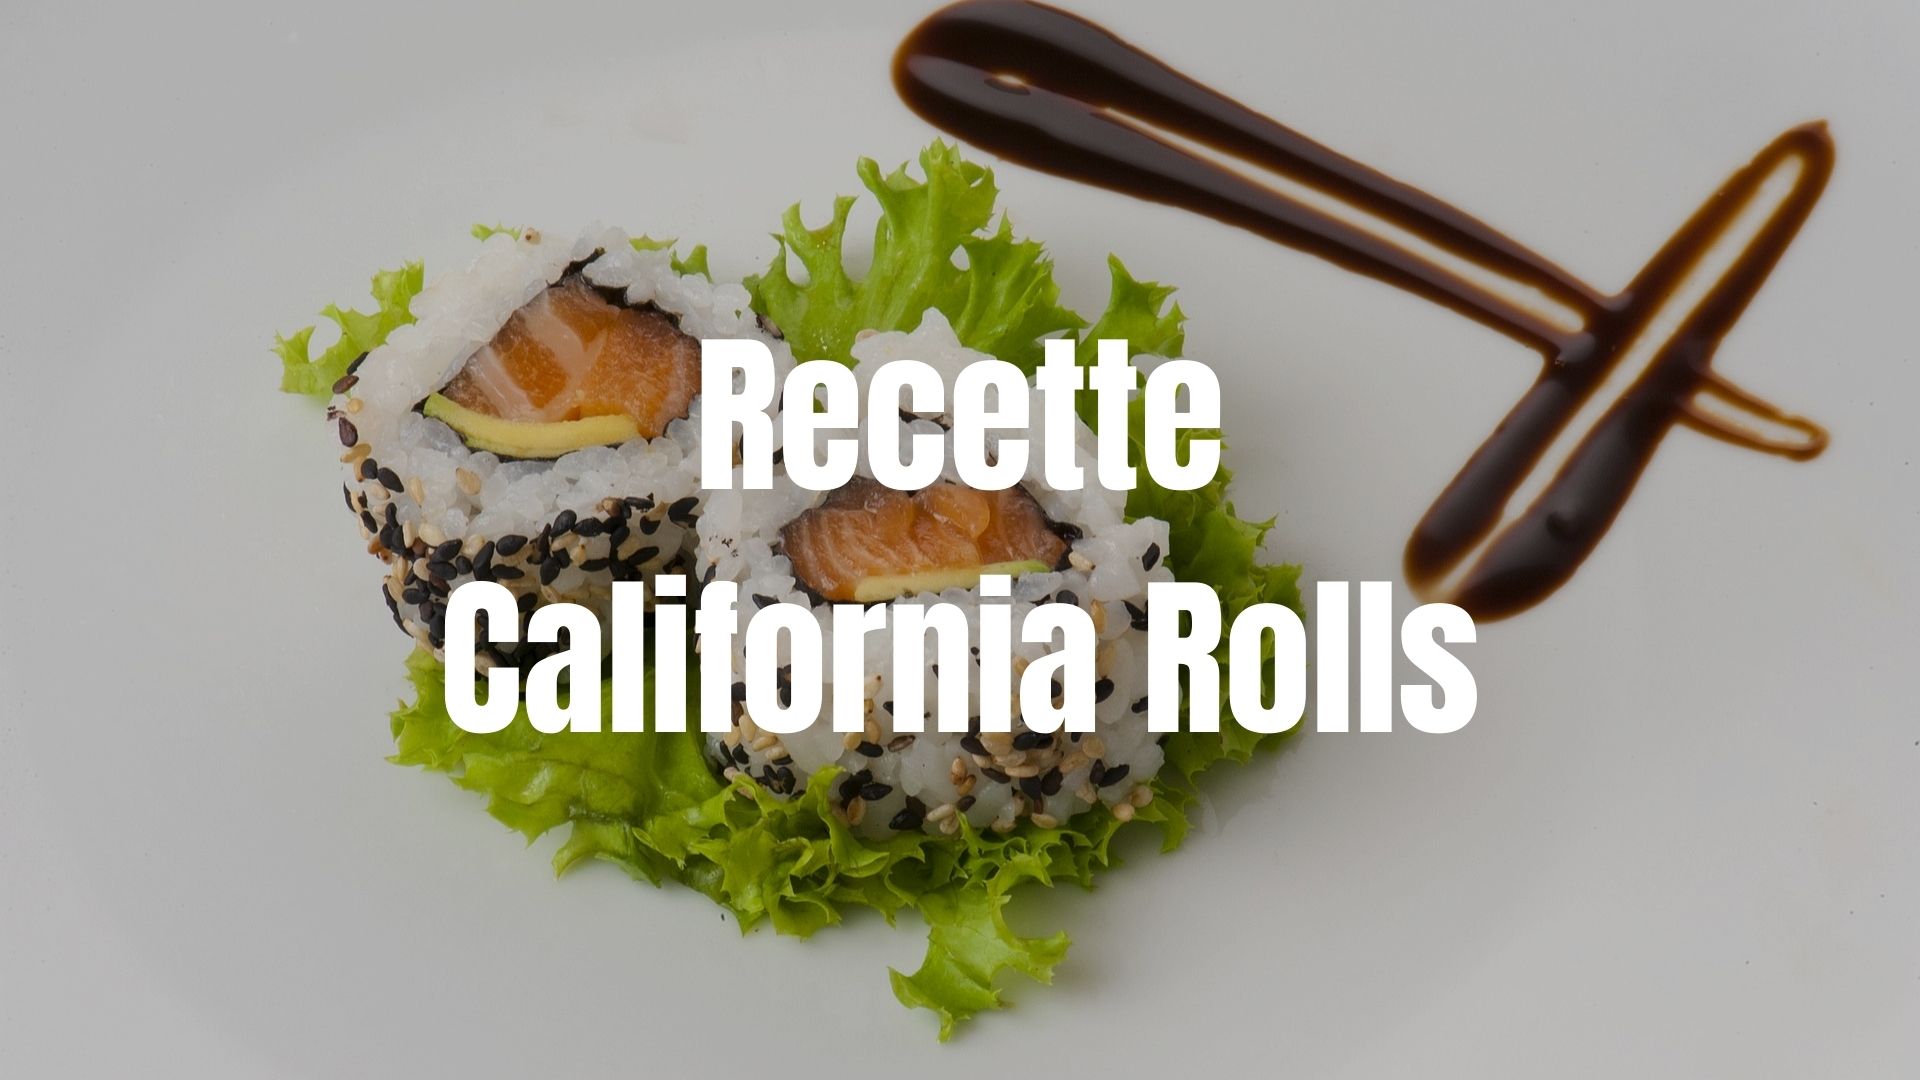 Recette california rolls